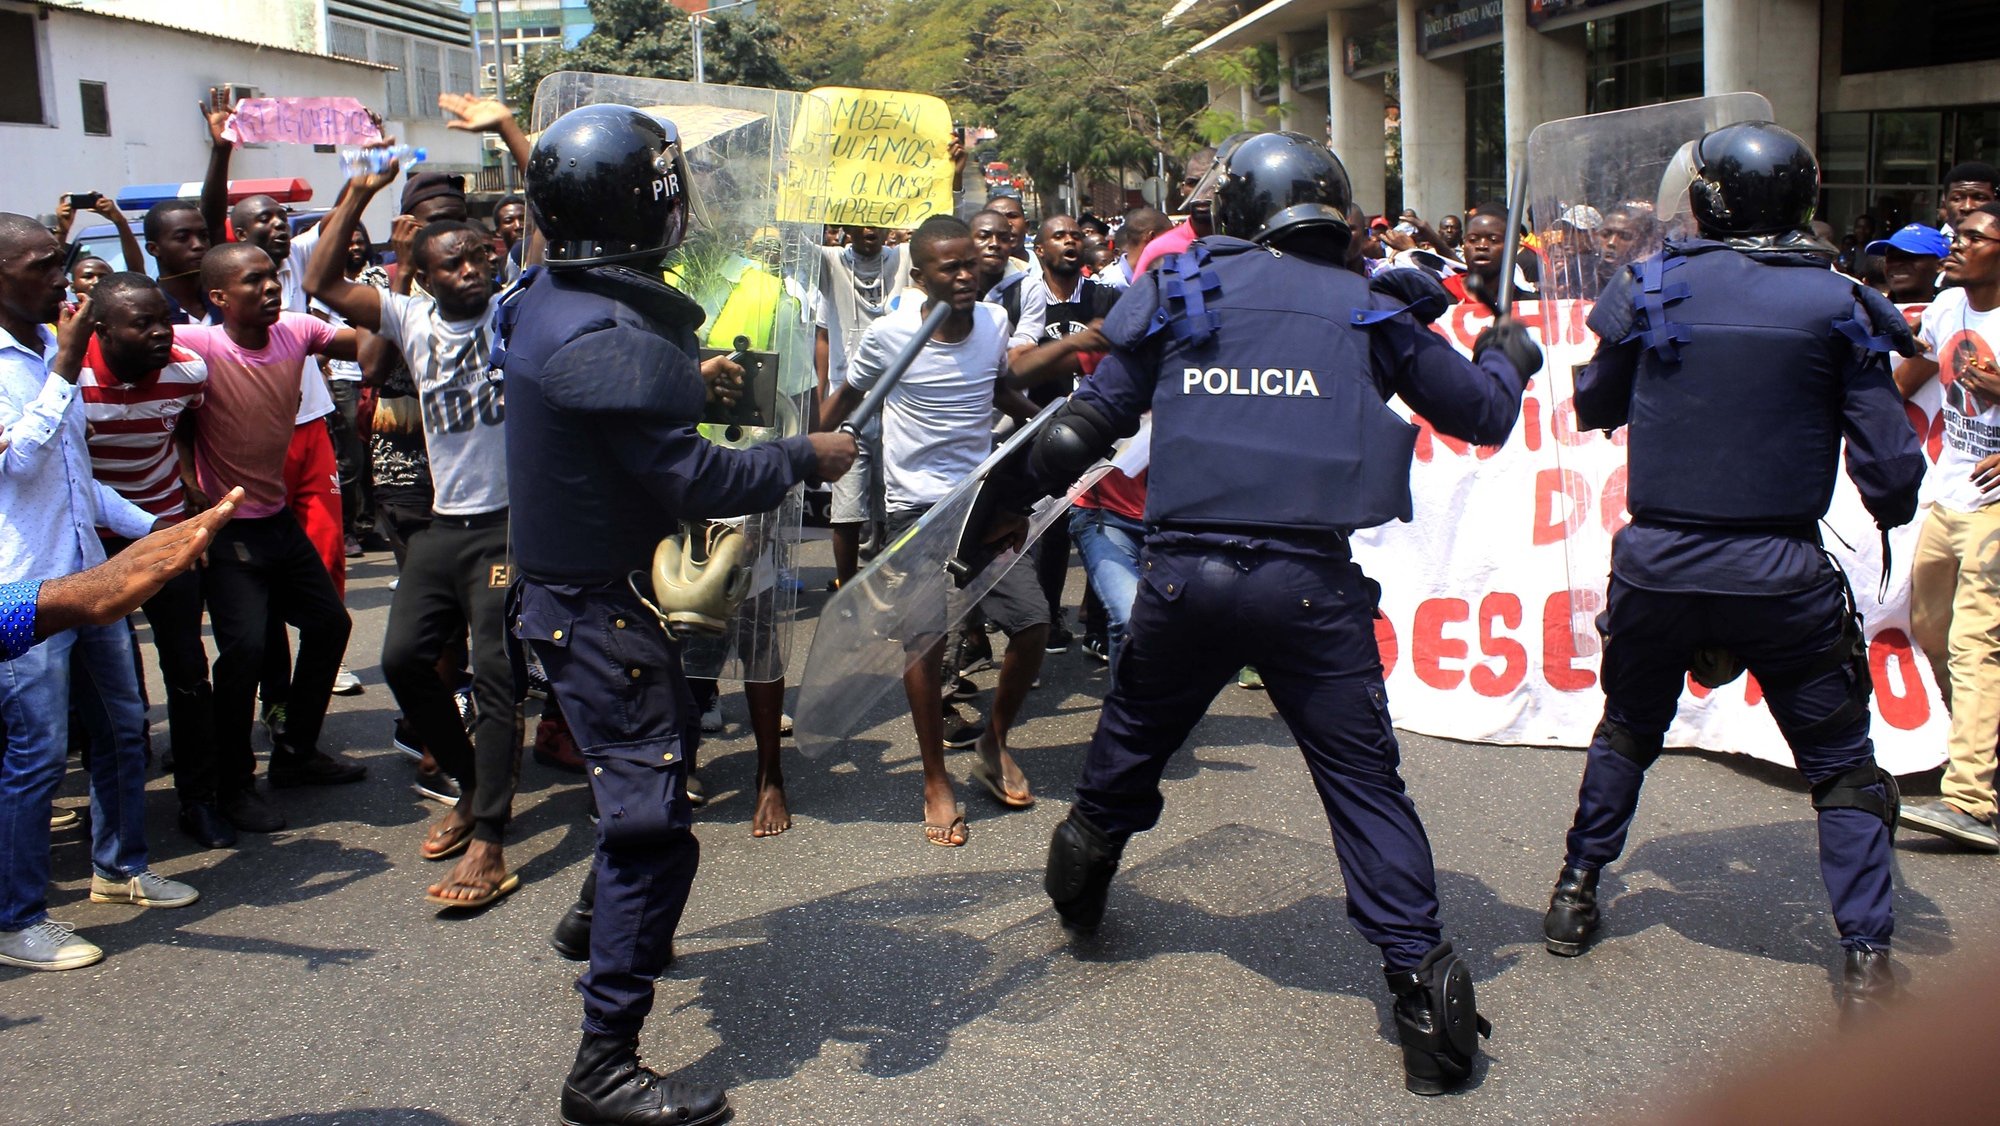 Elementos da Polícia carregam sobre os manifestanmtes durante a marcha contra o desemprego e o &quot;marimbondo&quot; João Lourenço, reivindicando o cumprimento das promessas eleitorais, num protesto marcado por alguns momentos de tensão com a polícia, mas também pela &quot;conquista&quot; da liberdade de expressão, em Luanda, Angola, 24 de agosto de 2019. AMPE ROGÉRIO/LUSA